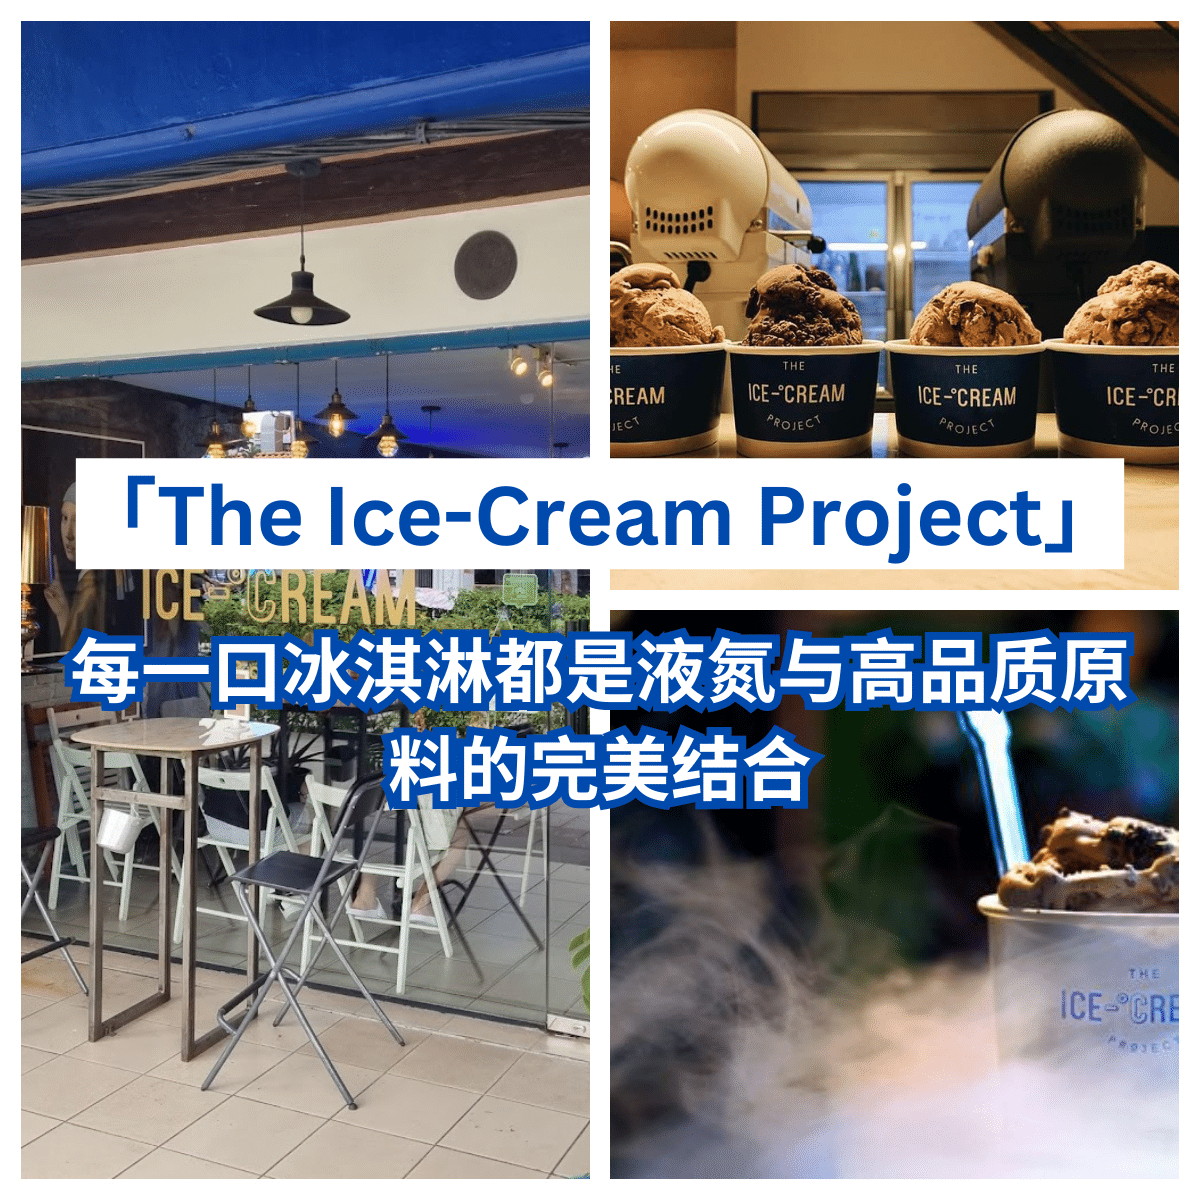 “冰淇淋新经典，价格更亲民——来「 The Ice-Cream Project 」寻找你的味道！”